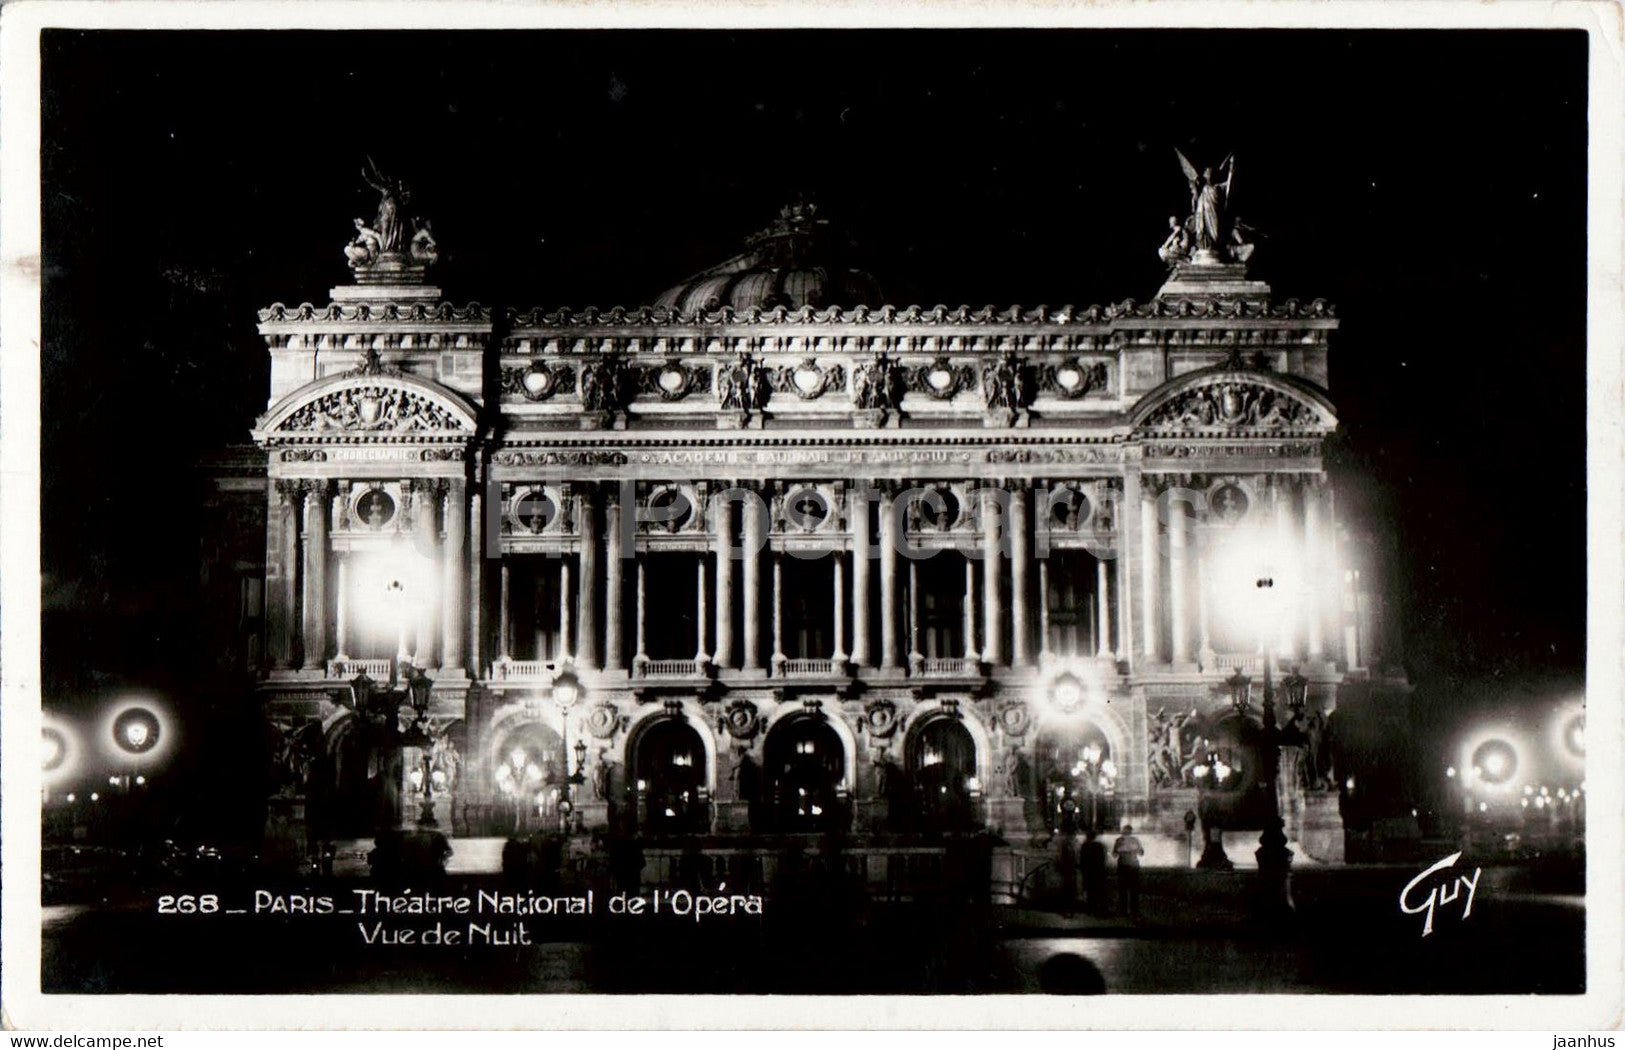 Paris - Theatre National de l'Opera - Vue de Nuit - theatre - 268 - old postcard - France - unused - JH Postcards